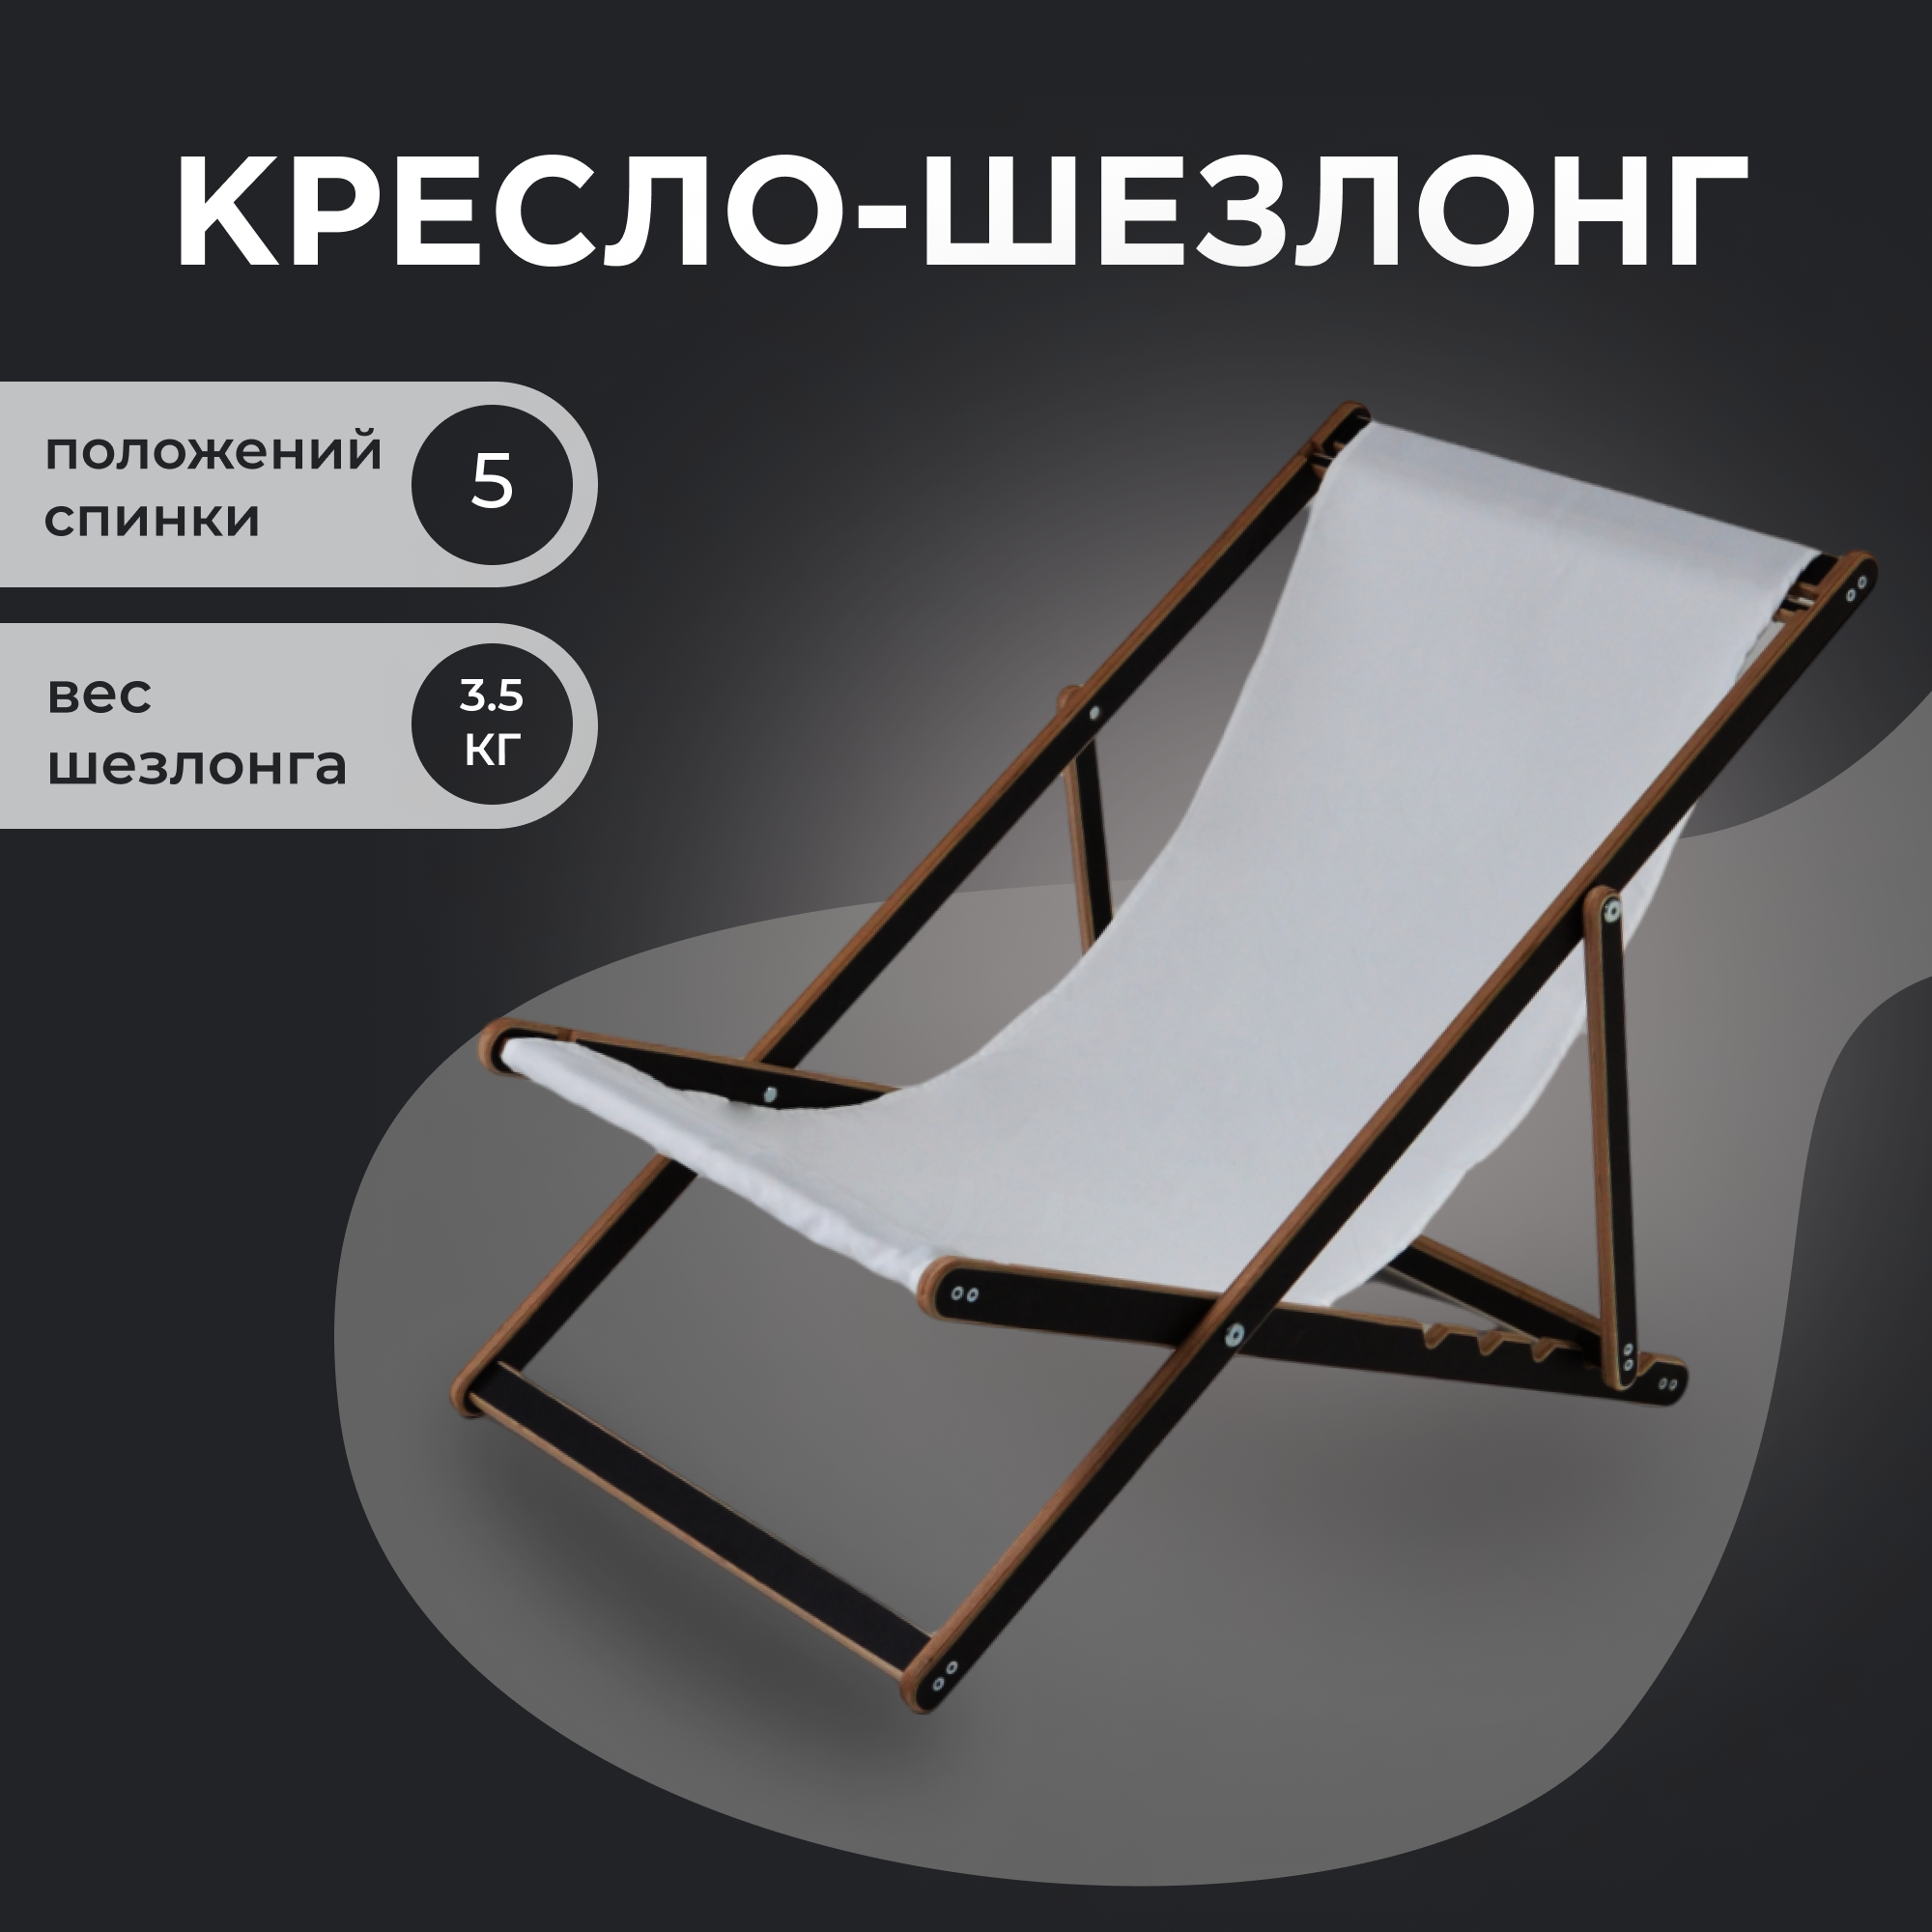 Кресло-шезлонг "Березка" ламинированный с белой тканью для дома и для дачи